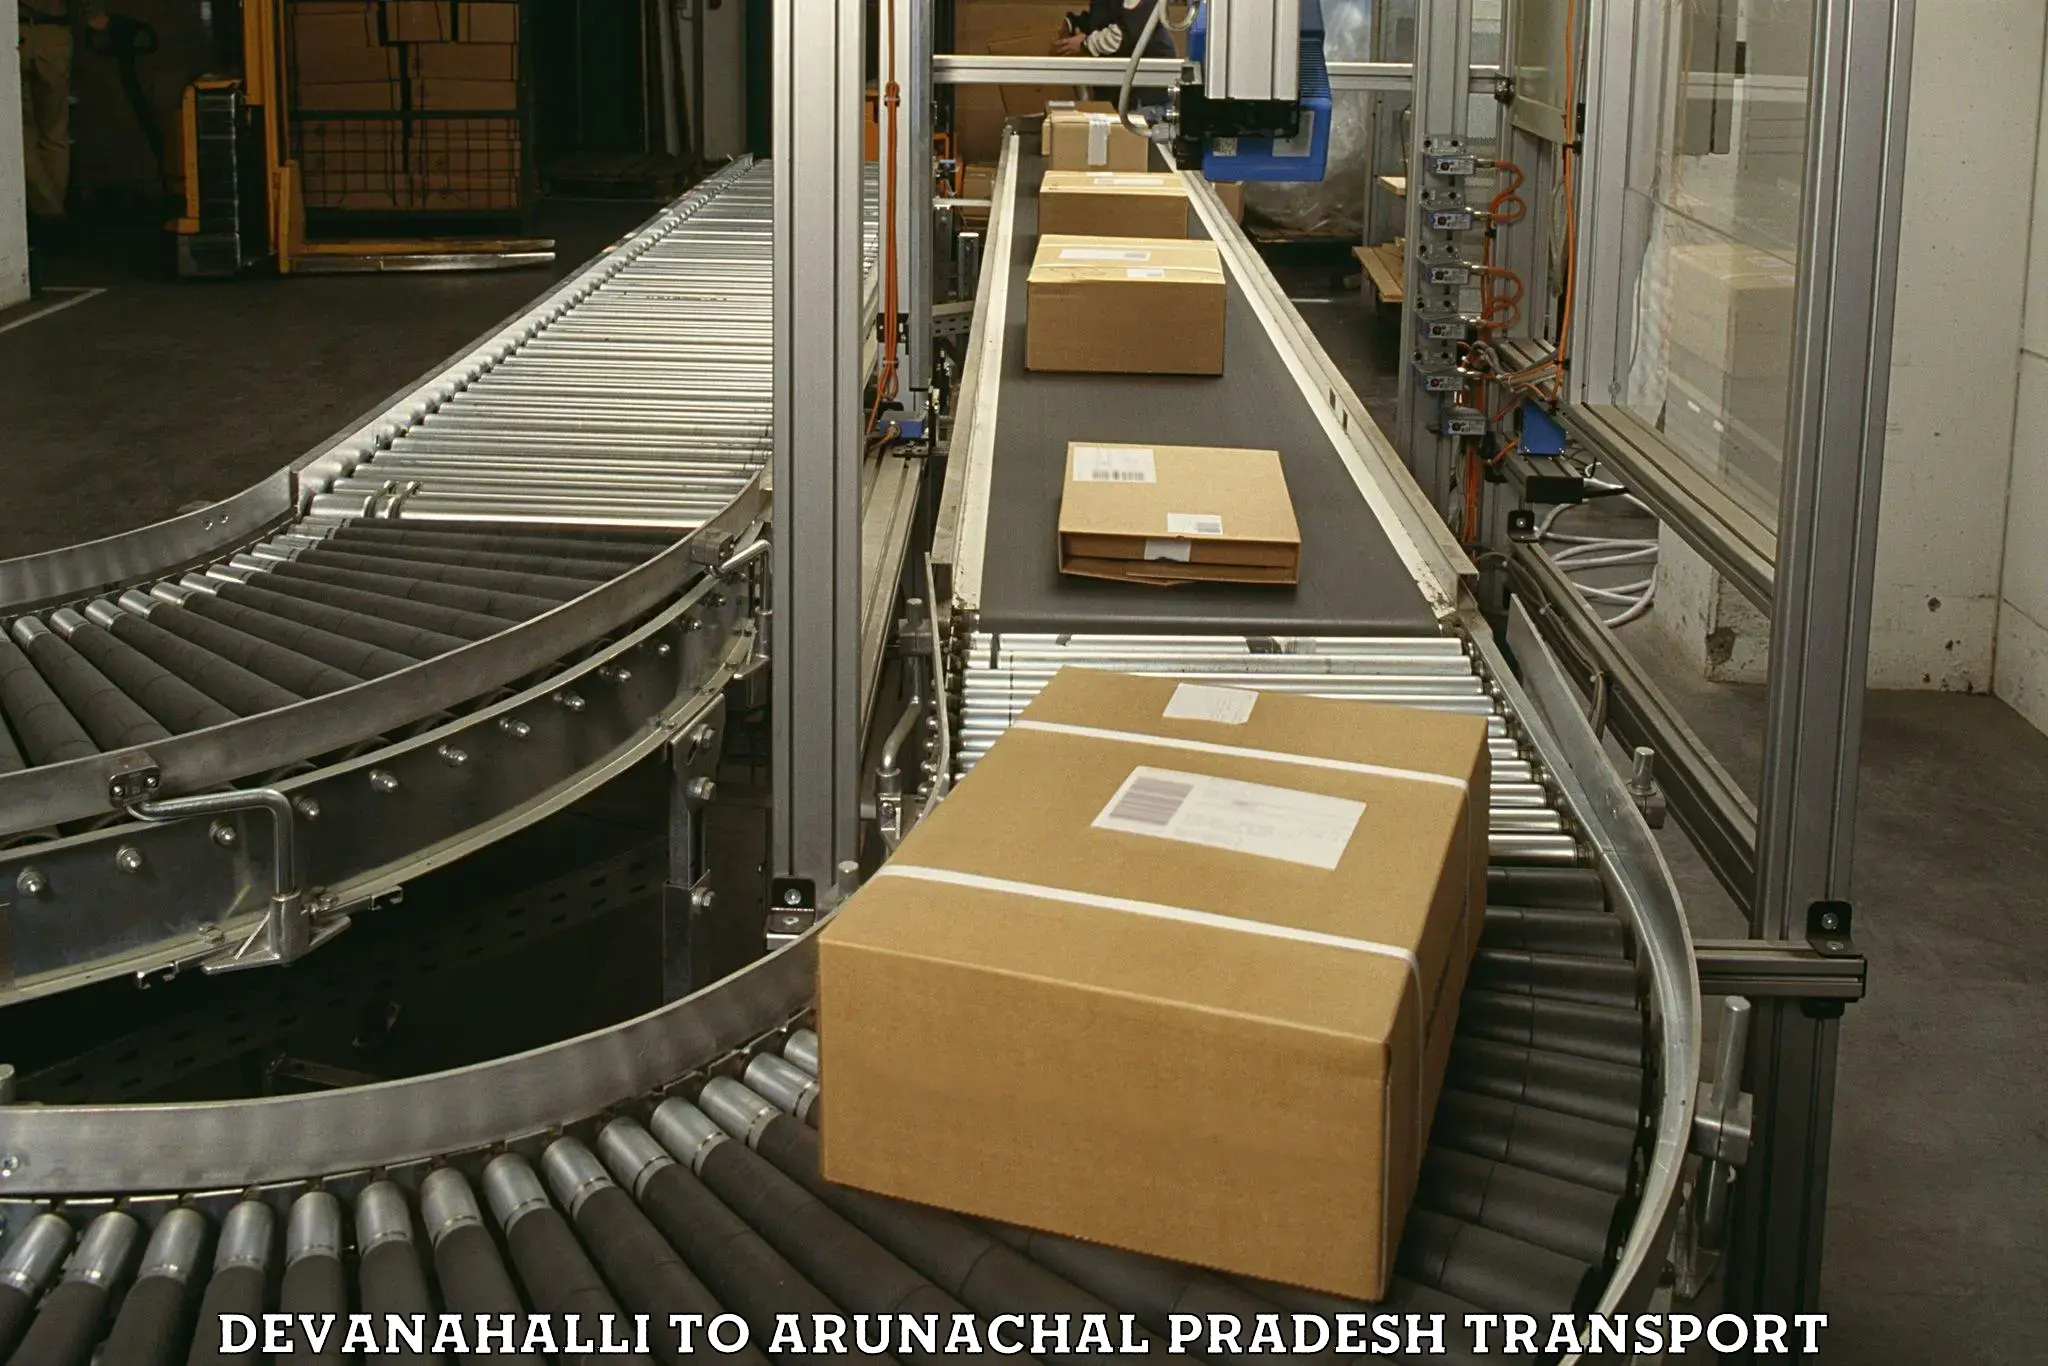 Transport shared services Devanahalli to Arunachal Pradesh